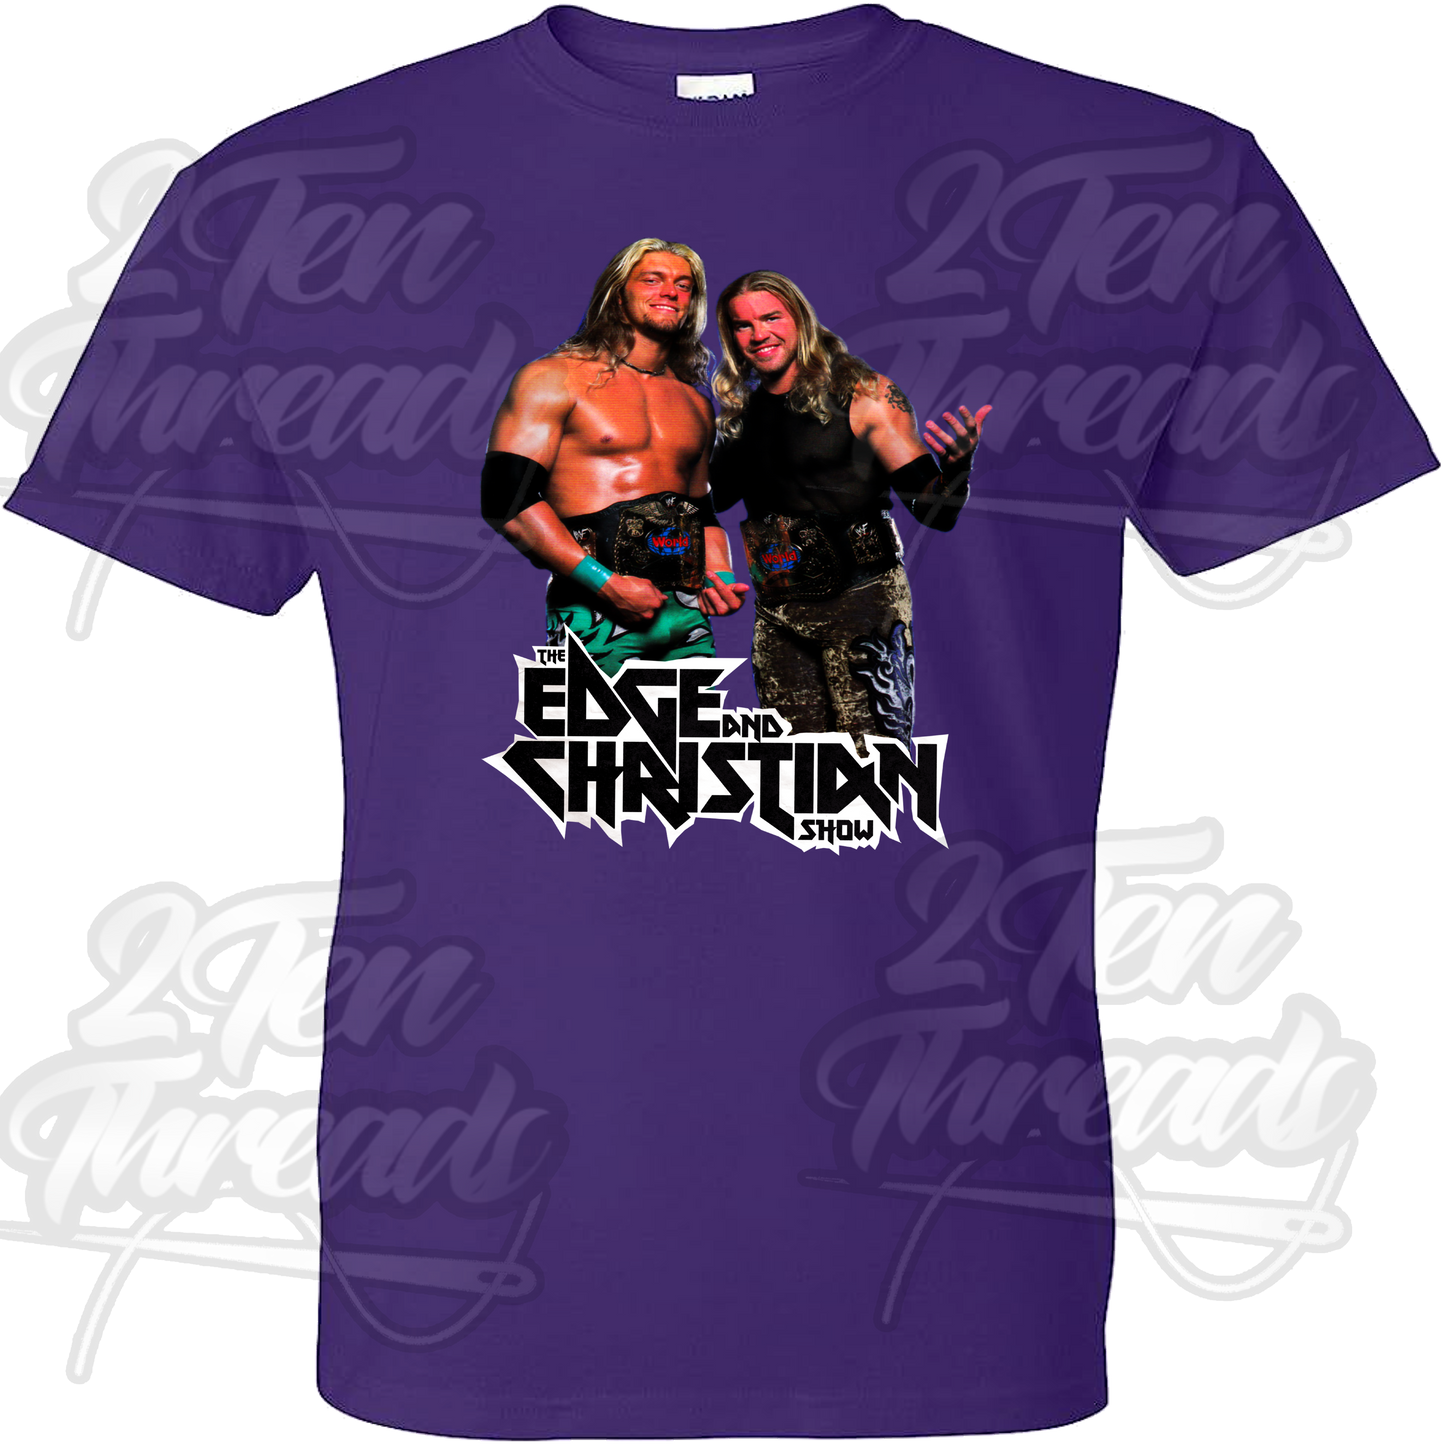 Edge and Christian Shirt